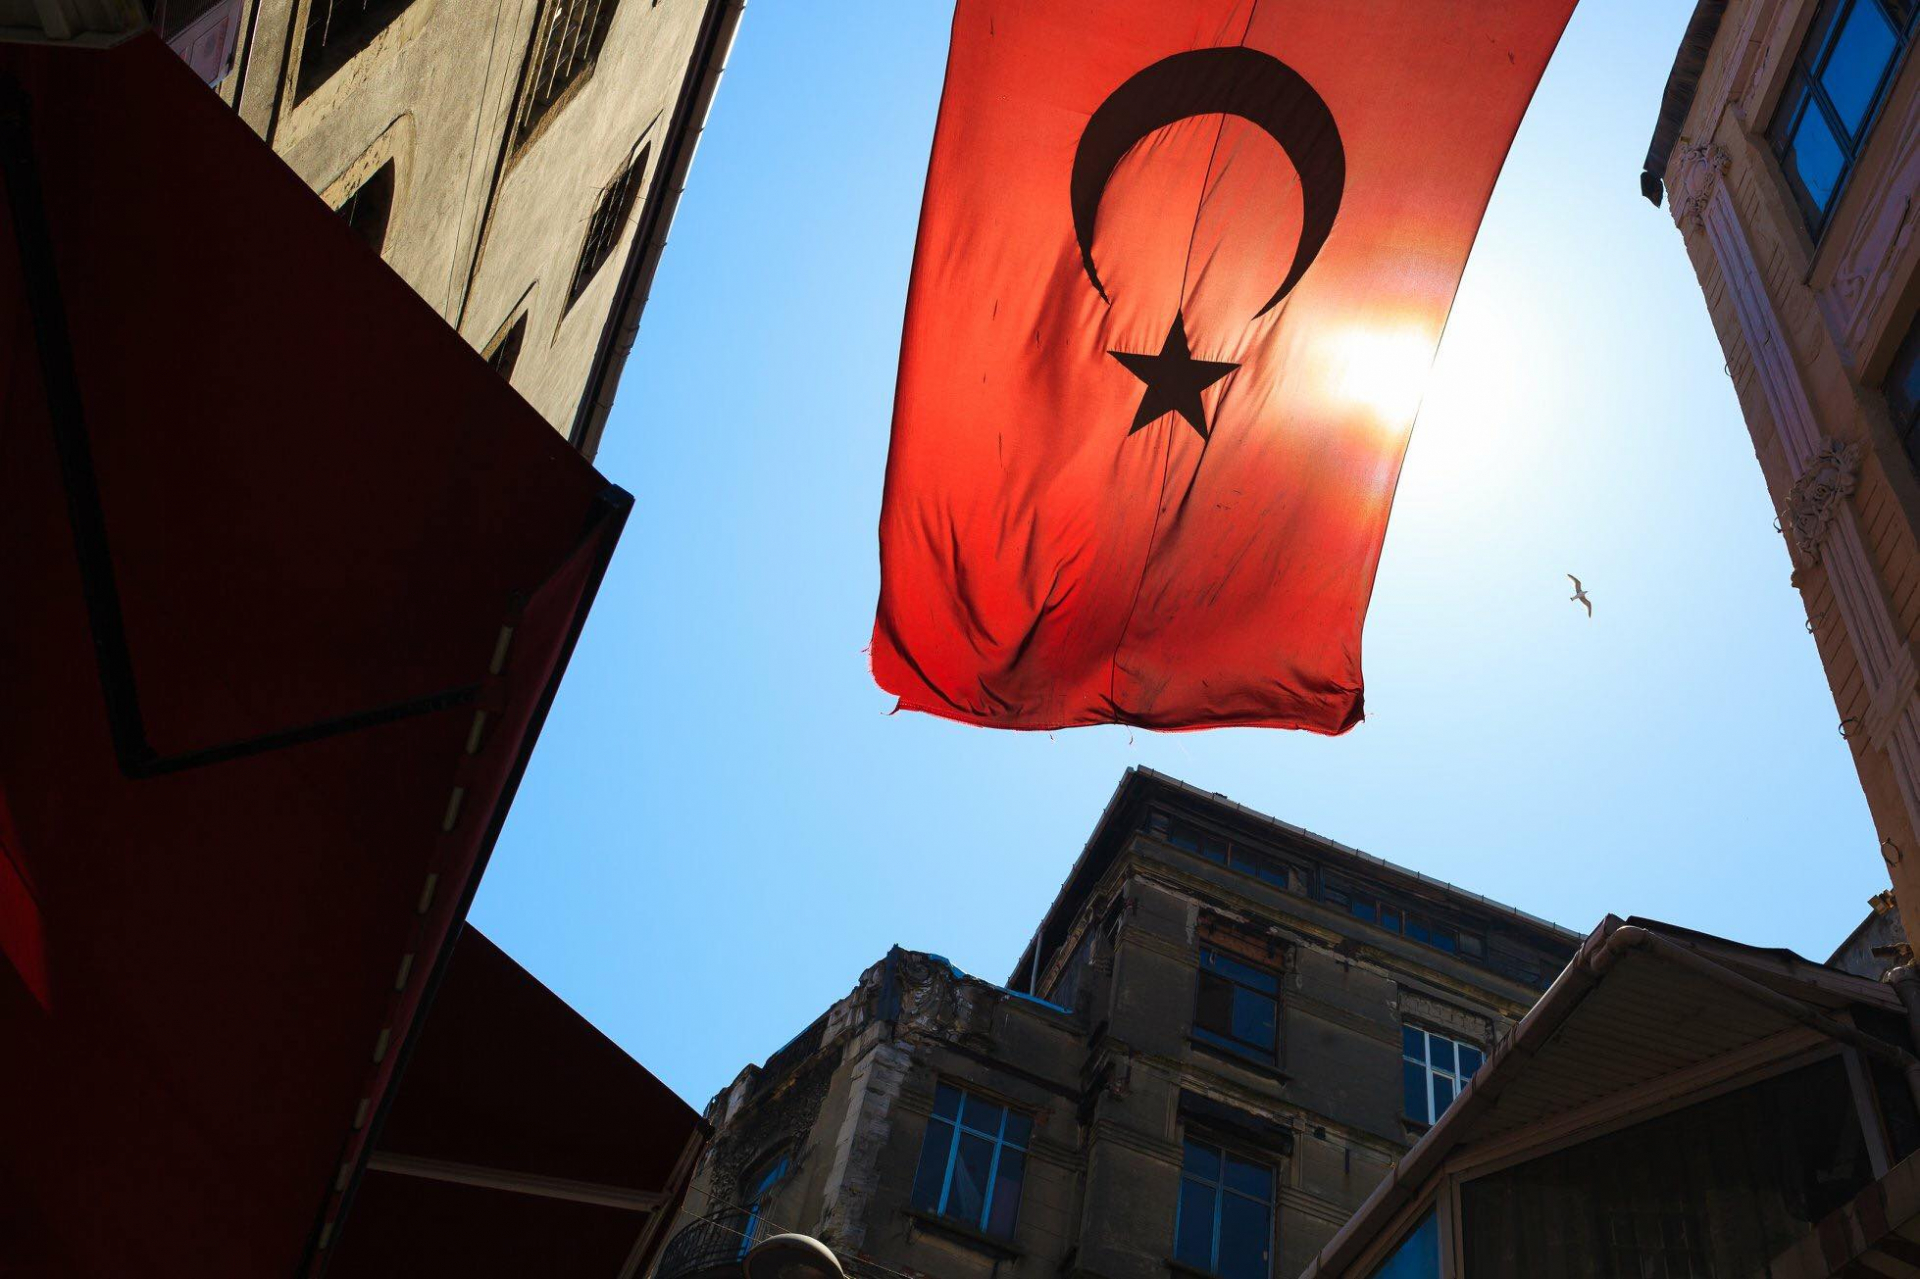 Quốc kỳ Thổ Nhĩ Kỳ bay trên con ngõ nhỏ cạnh khu chợ cổ Grand Bazaar - Istanbul.